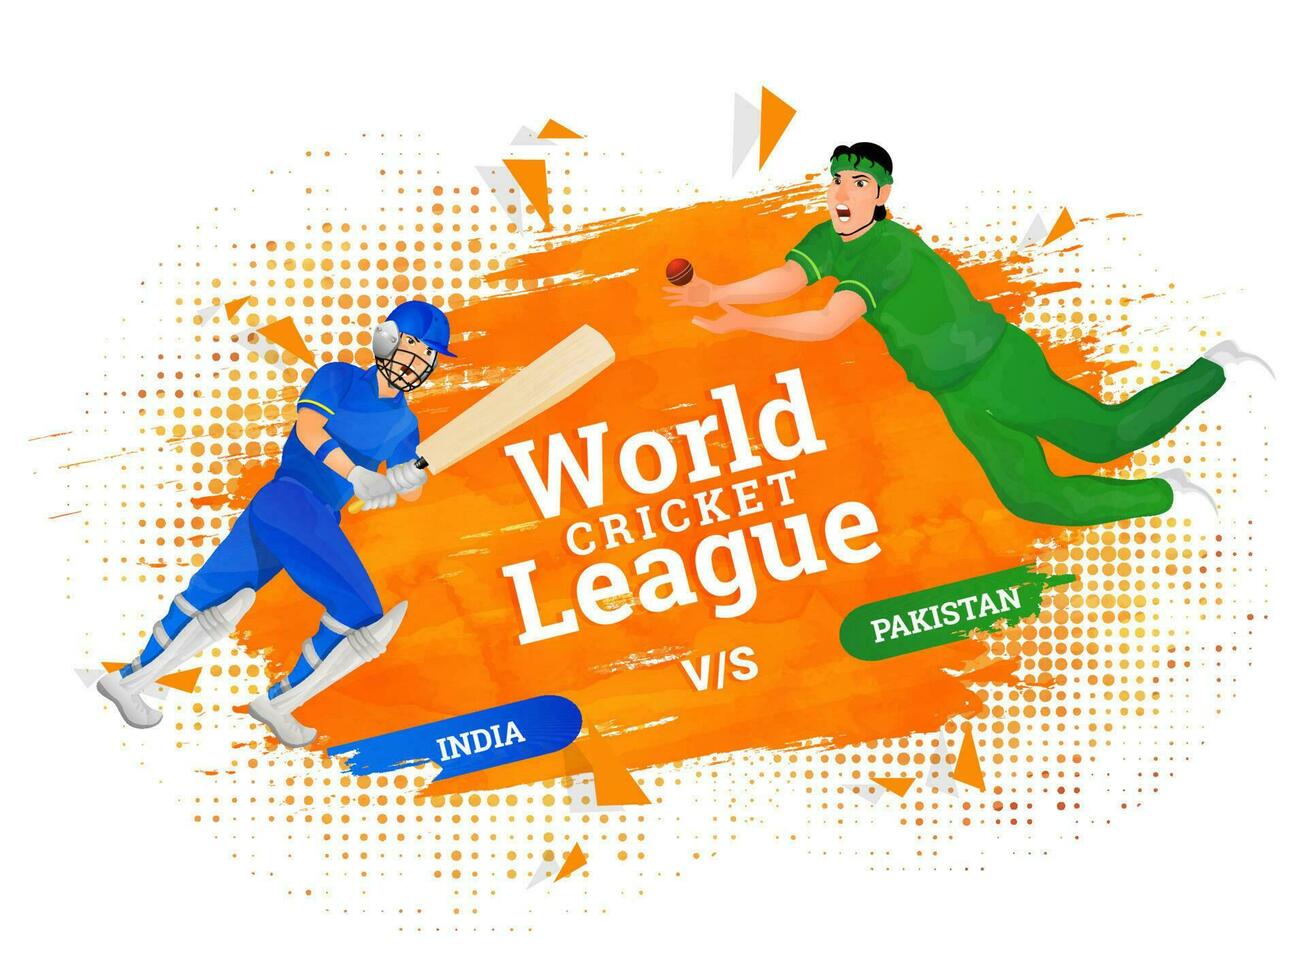 värld cricket liga affisch design med cricket spelare karaktär av deltagare team Indien mot pakistan. vektor